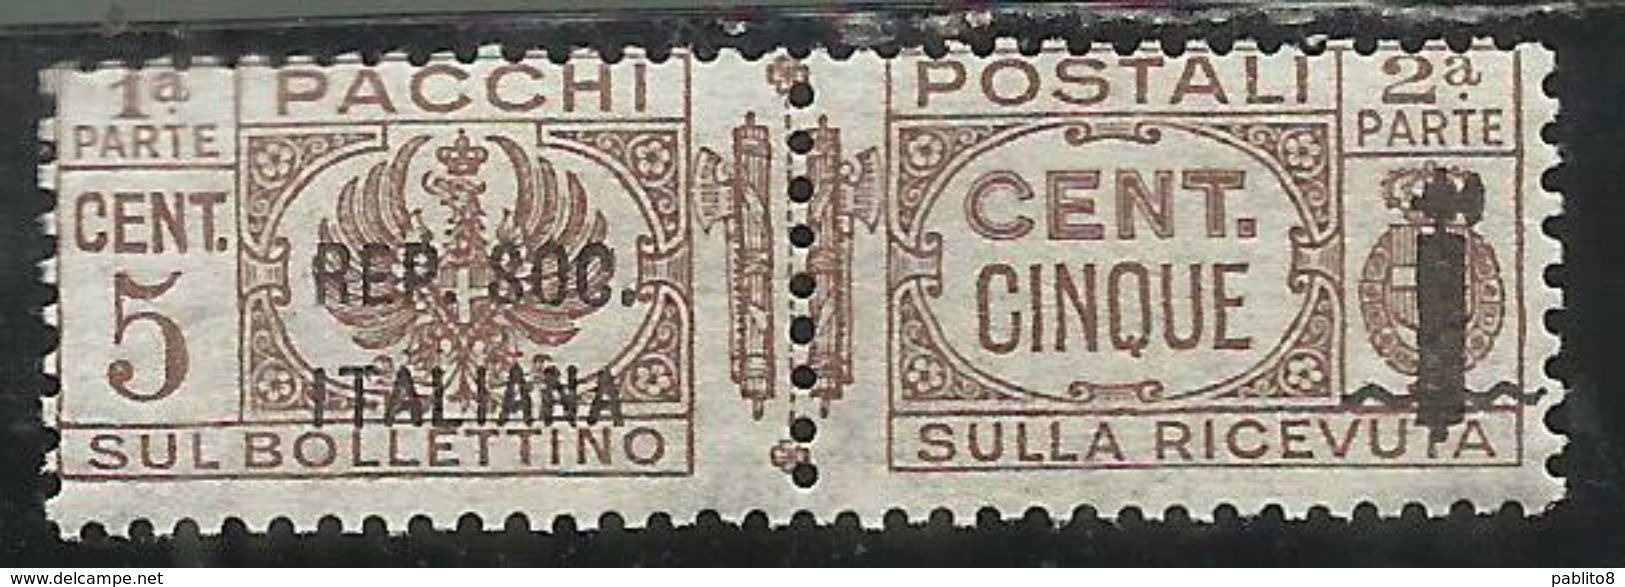 ITALIA REGNO ITALY KINGDOM 1944 RSI REPUBBLICA SOCIALE PACCHI FASCIETTO CENT. 5c MNH - Paquetes Postales